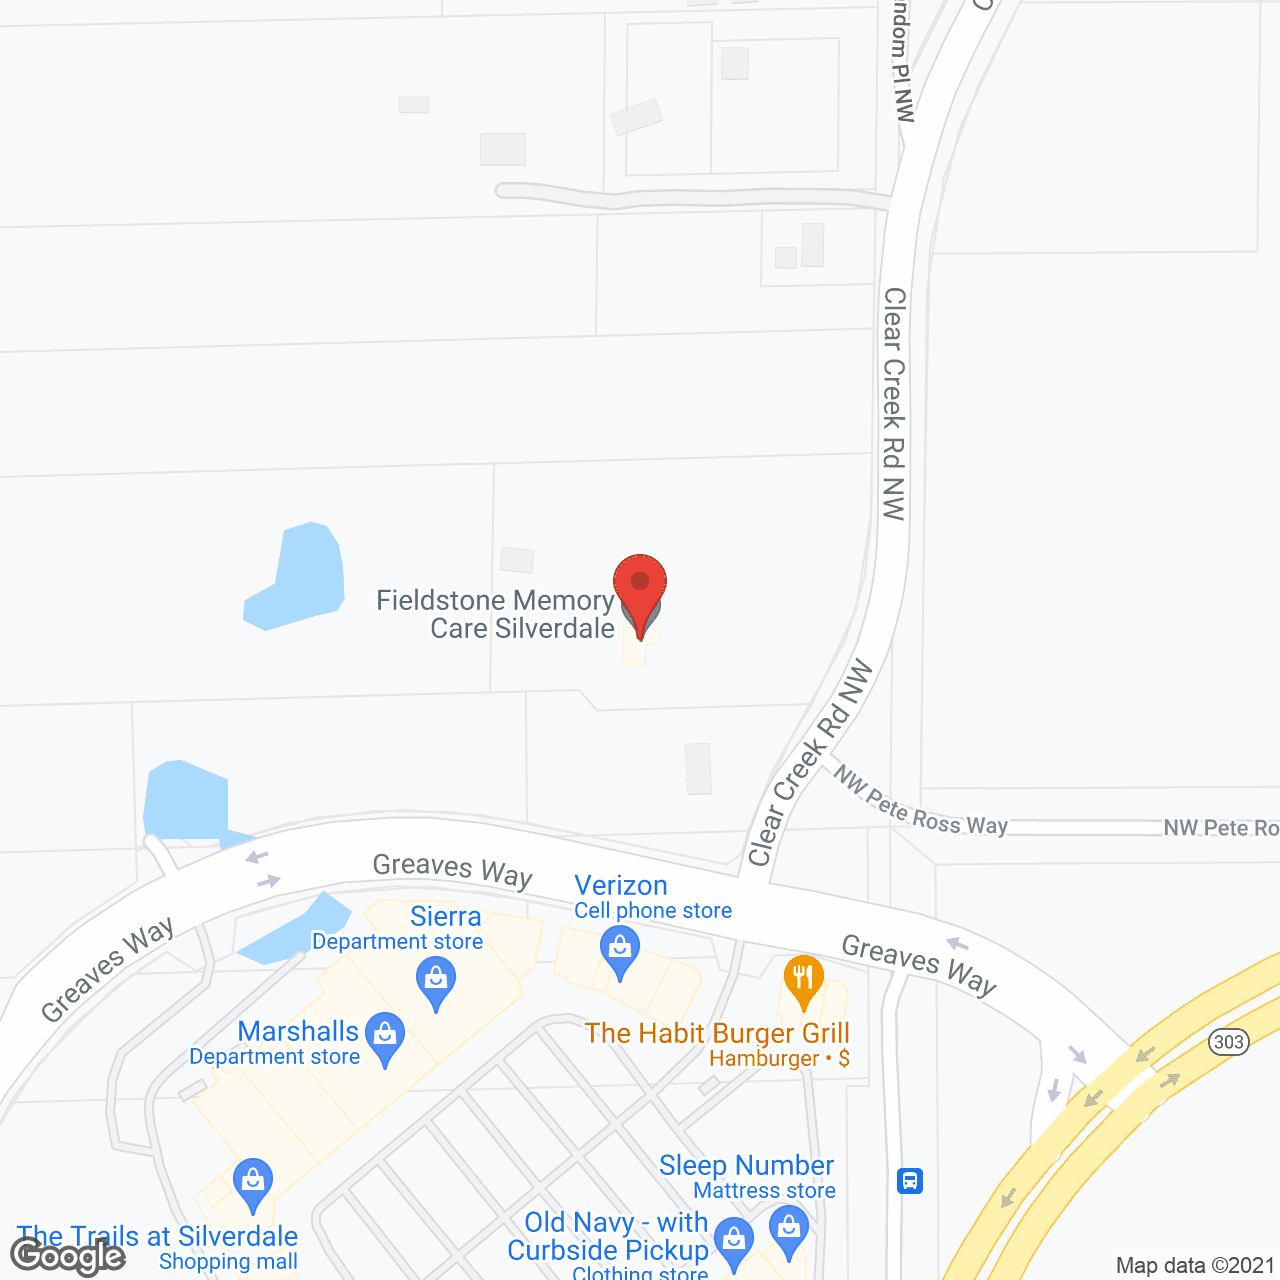 Fieldstone Memory Care of Silverdale in google map